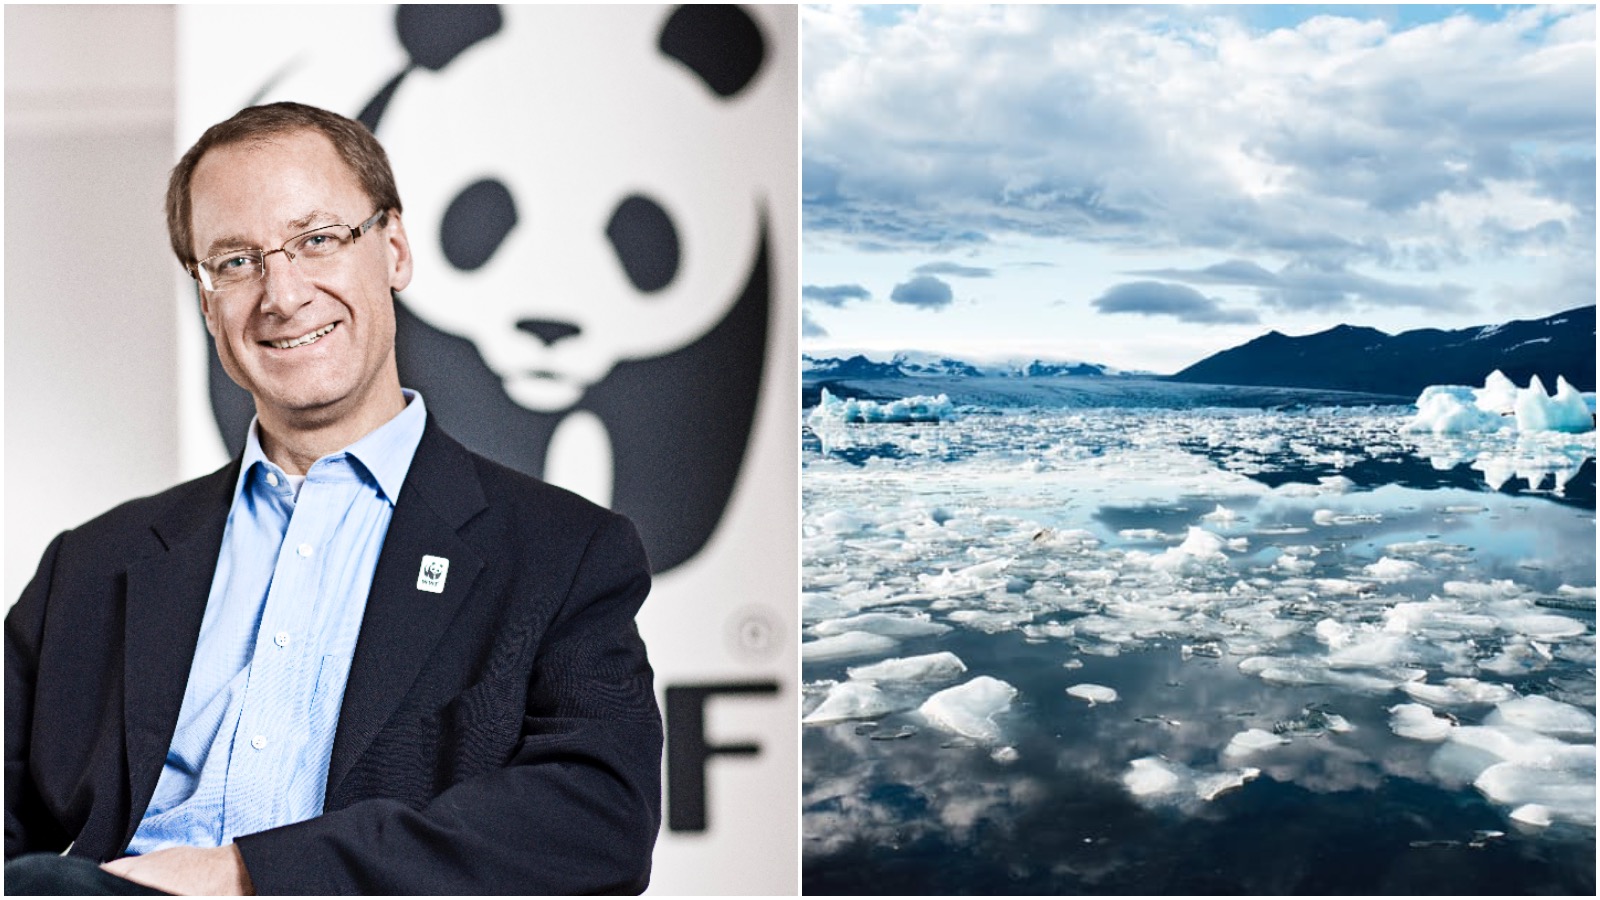 John Nordbo: Klimaet siger skråt op med det ”postfaktuelle samfund”